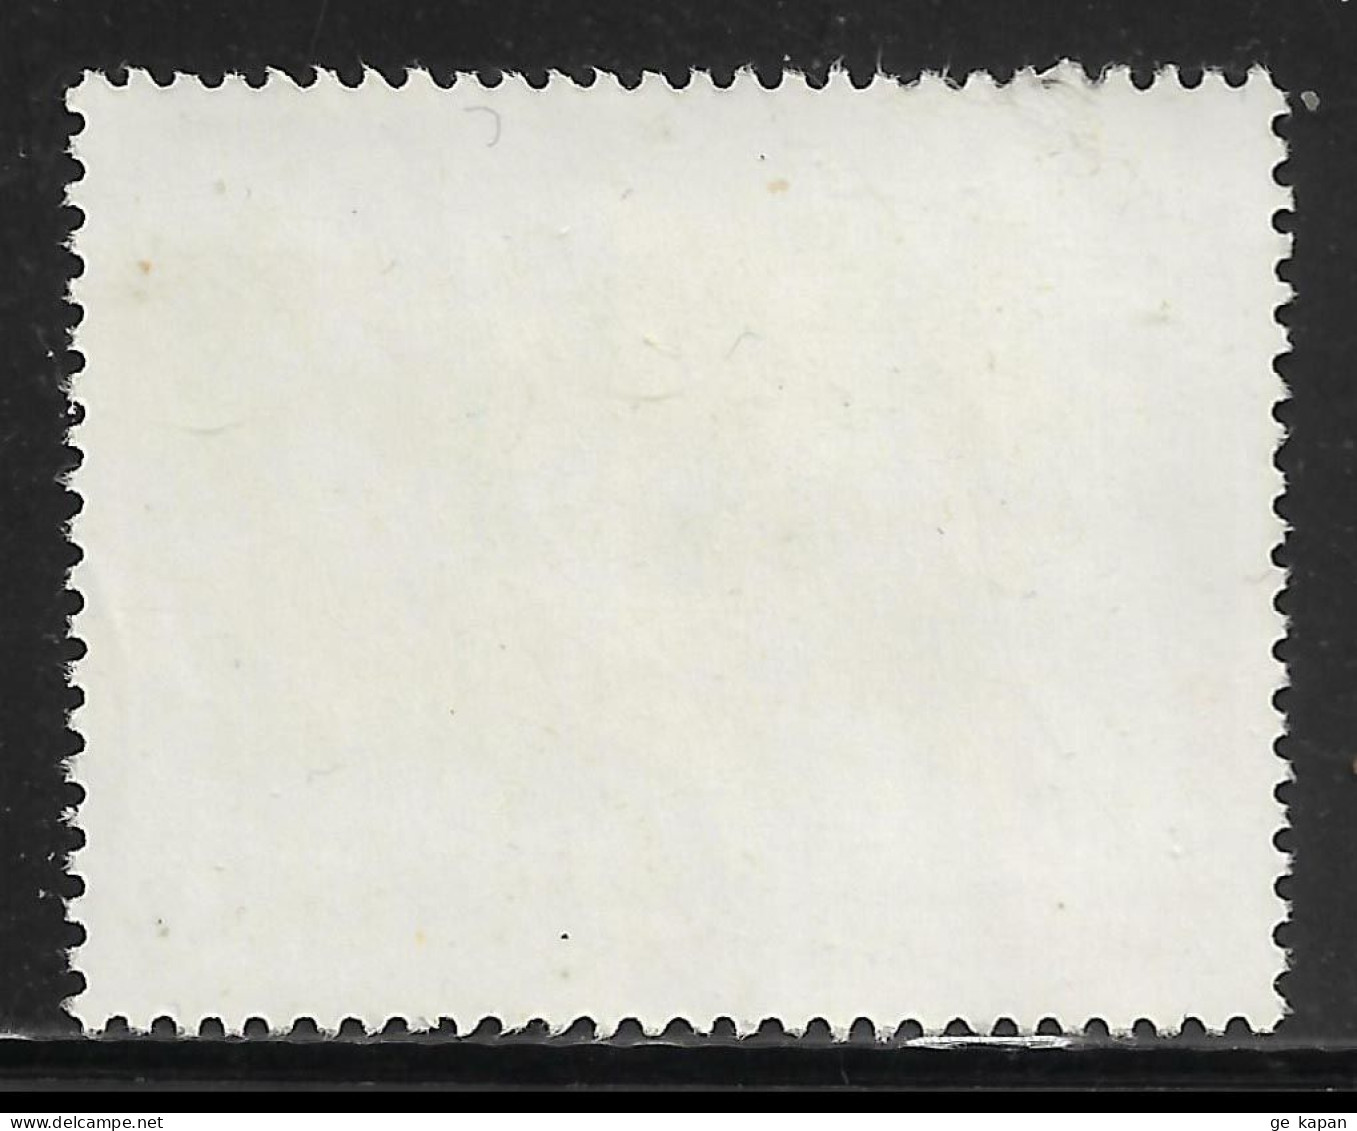 2010 GREECE Used Stamp (Scott # 2435) CV $2.50 - Usati